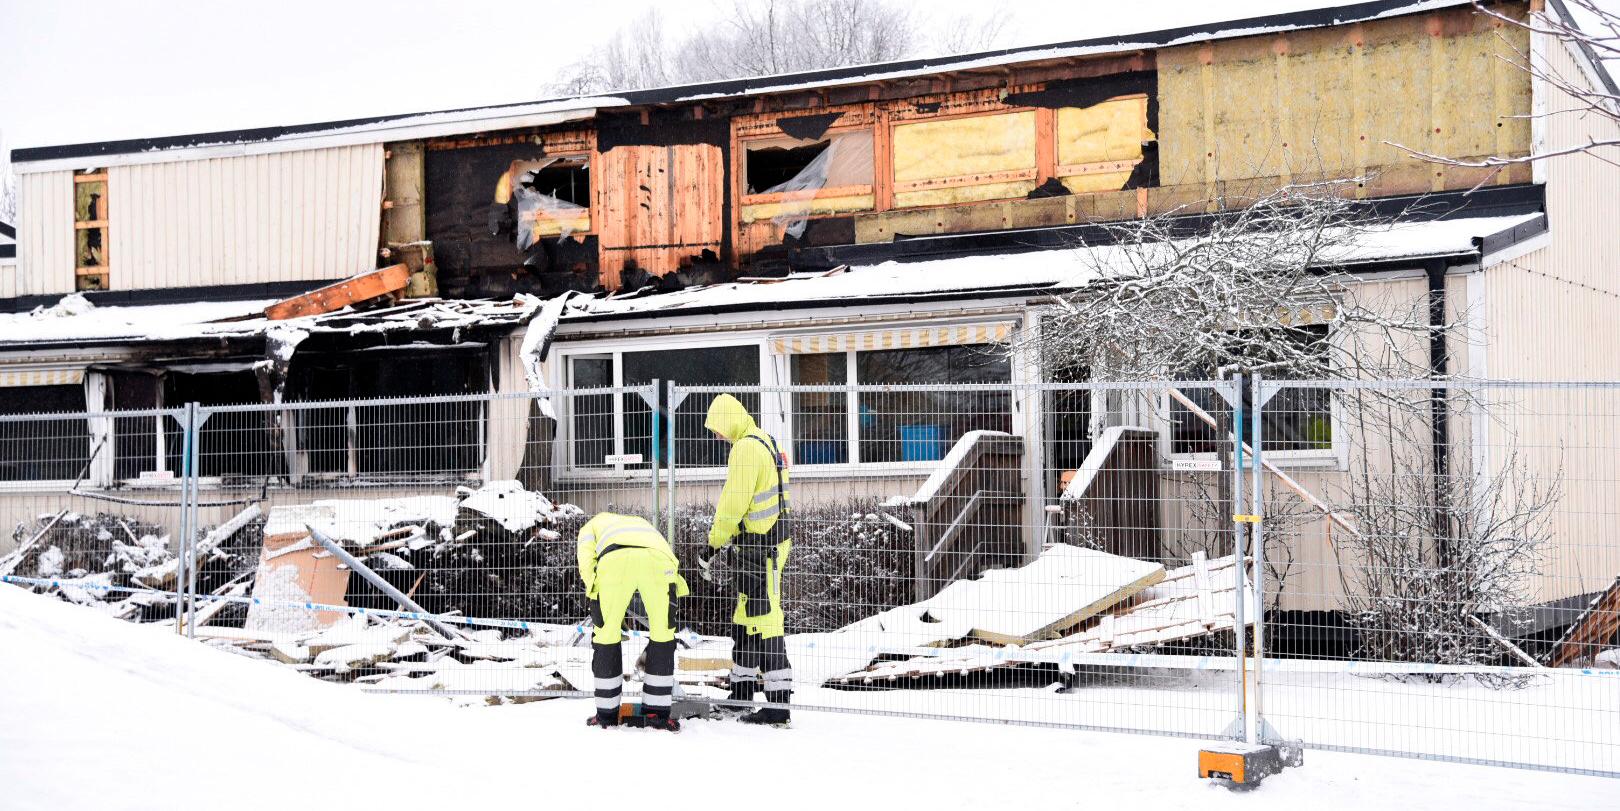 Näsbylundens förskola var en av tre fastigheter som drabbades av anlagda bränder i Täby natten mot fredag. Området spärrades av. Polisen har inlett förundersökning gällande mordbrand.